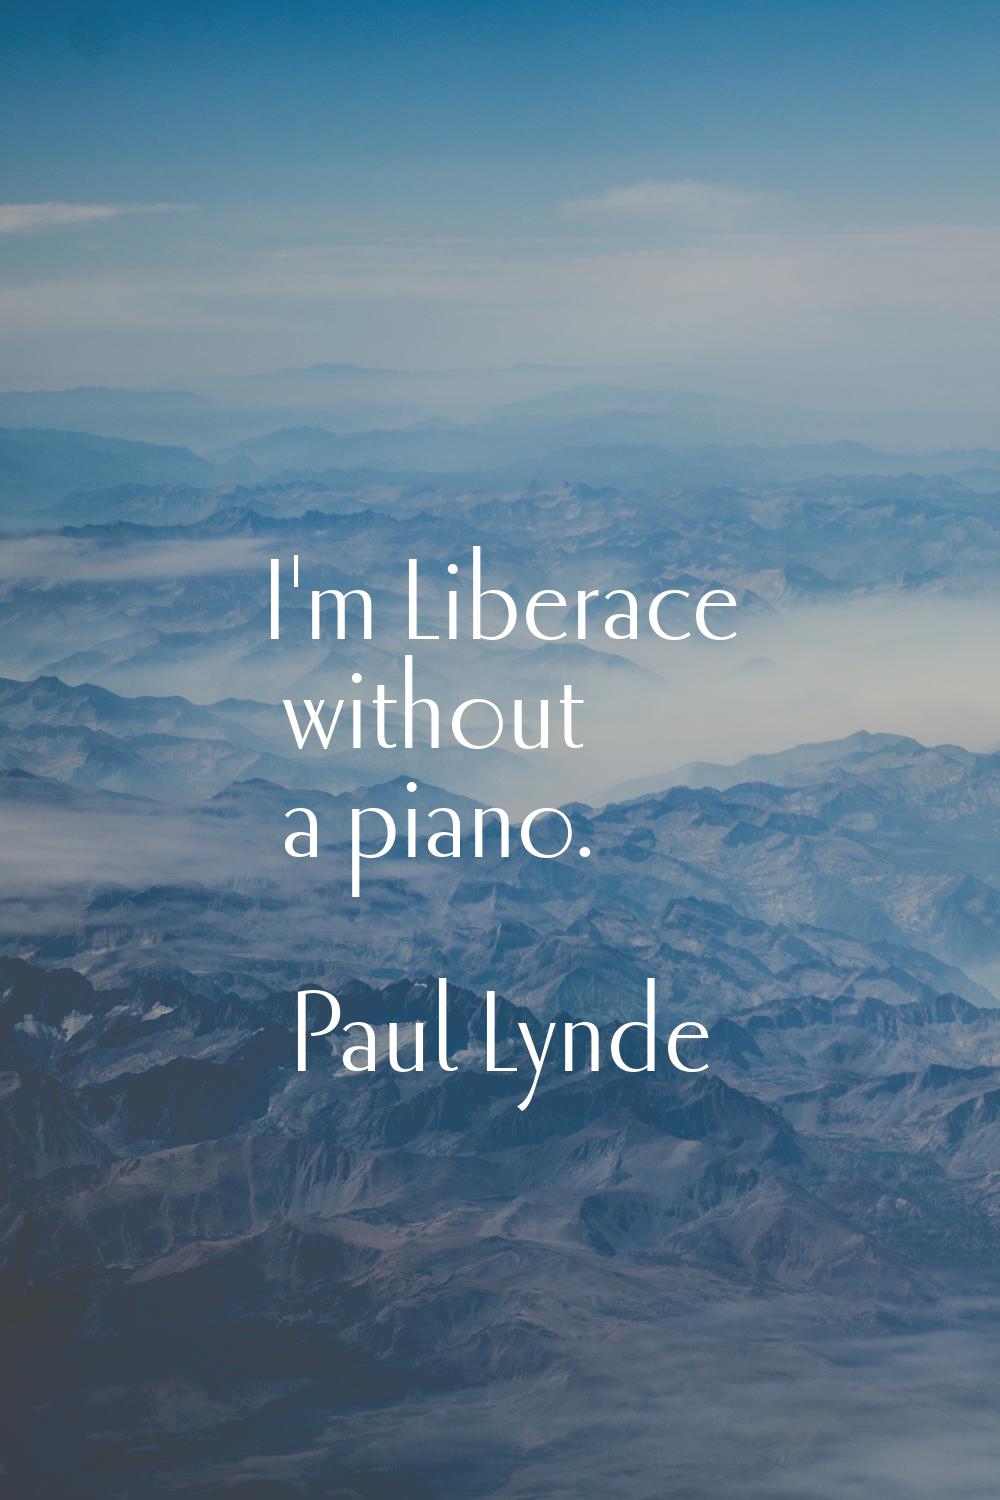 I'm Liberace without a piano.